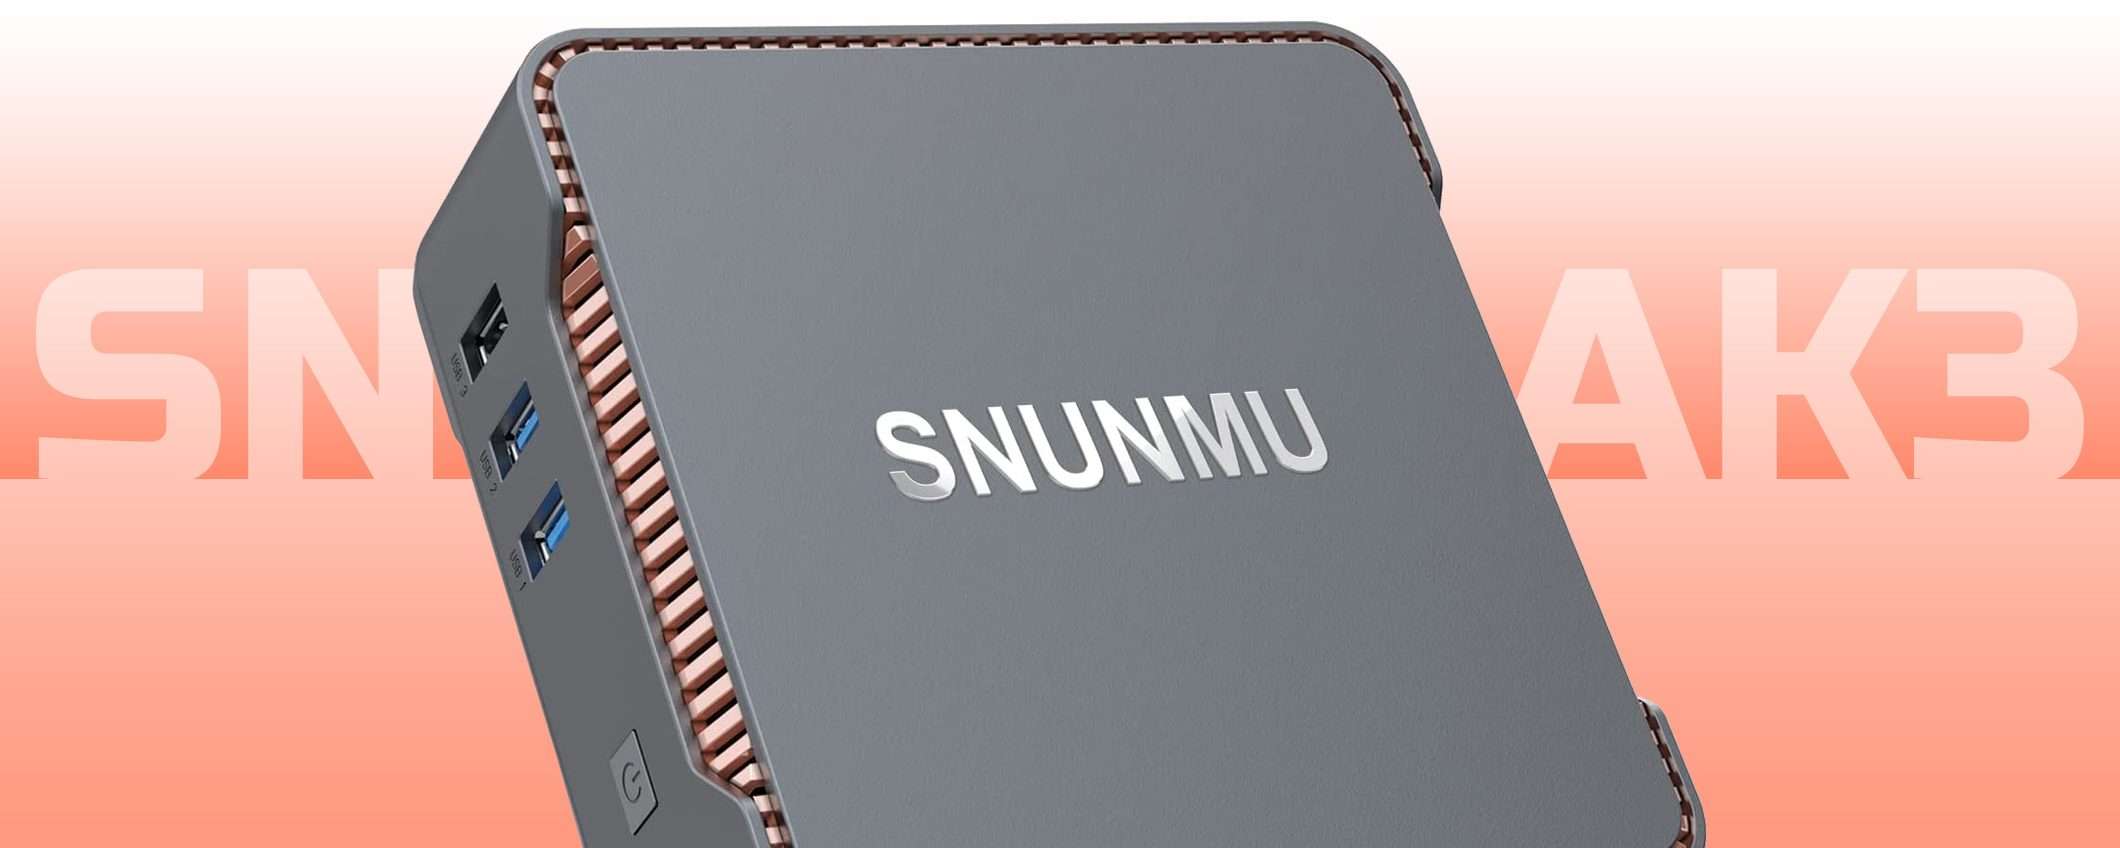 SNUNMU AK3: il Mini PC a 99 euro (offerta lampo)